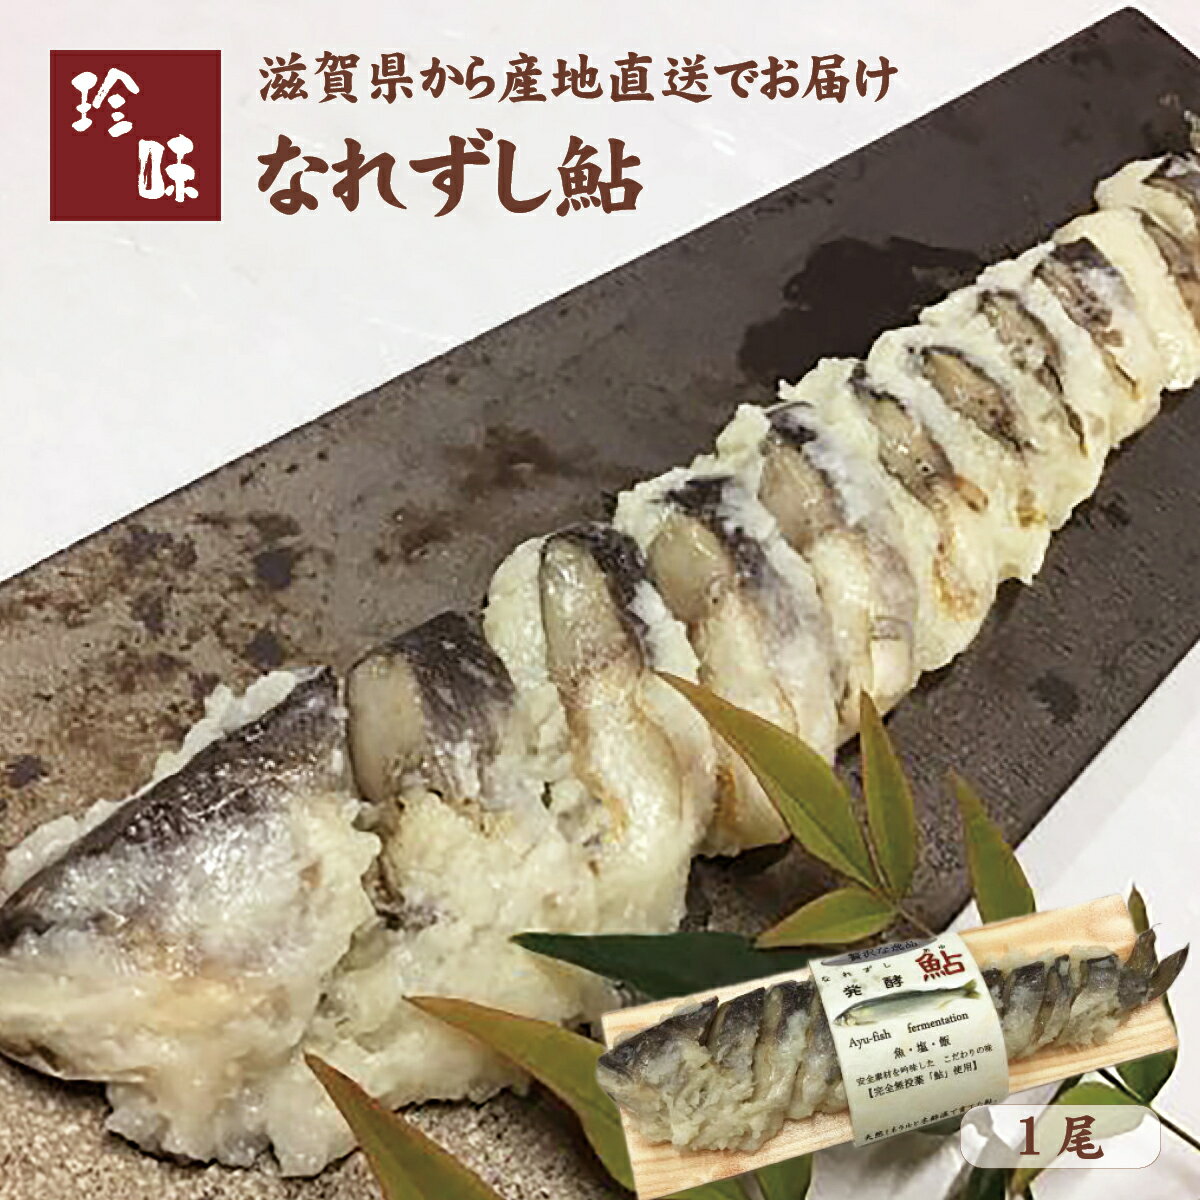 なれずし鮎 1尾 滋賀県から産地直送 琵琶湖の名産ふなずしの伝統的生産方法をいかした逸品！ 商品説明 琵琶湖の名産「ふなずし」の伝統的生産方法をいかした「なれずし鮎」をお届けします。 「ふなずし」とは琵琶湖固有種のニゴロブナを使うなれ鮨の一種で、古くから滋賀県に伝わる郷土料理です。塩漬けしたニゴロブナをお米と一緒に樽に入れて熟成させると、乳酸発酵により骨まで柔らかい美味しいふなずしが出来上がります。 当商品は、同様の方法で天然ミネラル水で育った国産鮎をふなずしのように1年漬け込みました。乳酸発酵した鮎は匂いが無く、とても淡白な旨味があります。滋賀県近江八幡市でニゴロブナの養殖からふなずしの販売までを一貫で行う専門店「飯魚（いお）」から産地直送でお届けいたします。 ご飯やお酒のおともとしてそのままお召し上がりいただくほか、熱いお茶や出し汁をかけお茶漬けとしてお楽しみいただくのもお勧めです。是非この機会にお試しください。 ※産地直送の商品となる為、本にごろ鮒専門 飯魚以外の商品との同梱、代引きが出来かねます。 ※内容は事前の予告なしに変更になる場合がございます。 内容 1尾 原材料名 鮎（国産）、うるち米（滋賀県）、塩（国産） 消費期限 冷蔵90日 製造者 滋賀県近江八幡市安土町上豊浦973-1 本にごろ鮒専門 飯魚 配送のご注意 離島や運送機関が定める特定地域へのお届けを希望される場合、更なる追加代金の発生、配送所要時間の延長、お届け不可のためご注文をお断りさせていただく事がございます。ご心配されているお客様はお電話にて配送の可否をご確認後にお申し込みください。 鮎 アユ いずし 飯寿司 なれずし ふなずし 本ニゴロ本舗 うすこ 琵琶湖 滋賀 近江八幡 飯魚 いお おかず おつまみ 肴 珍味 お取り寄せ 国産 健康 お中元 お歳暮 父の日 ギフト プレゼント